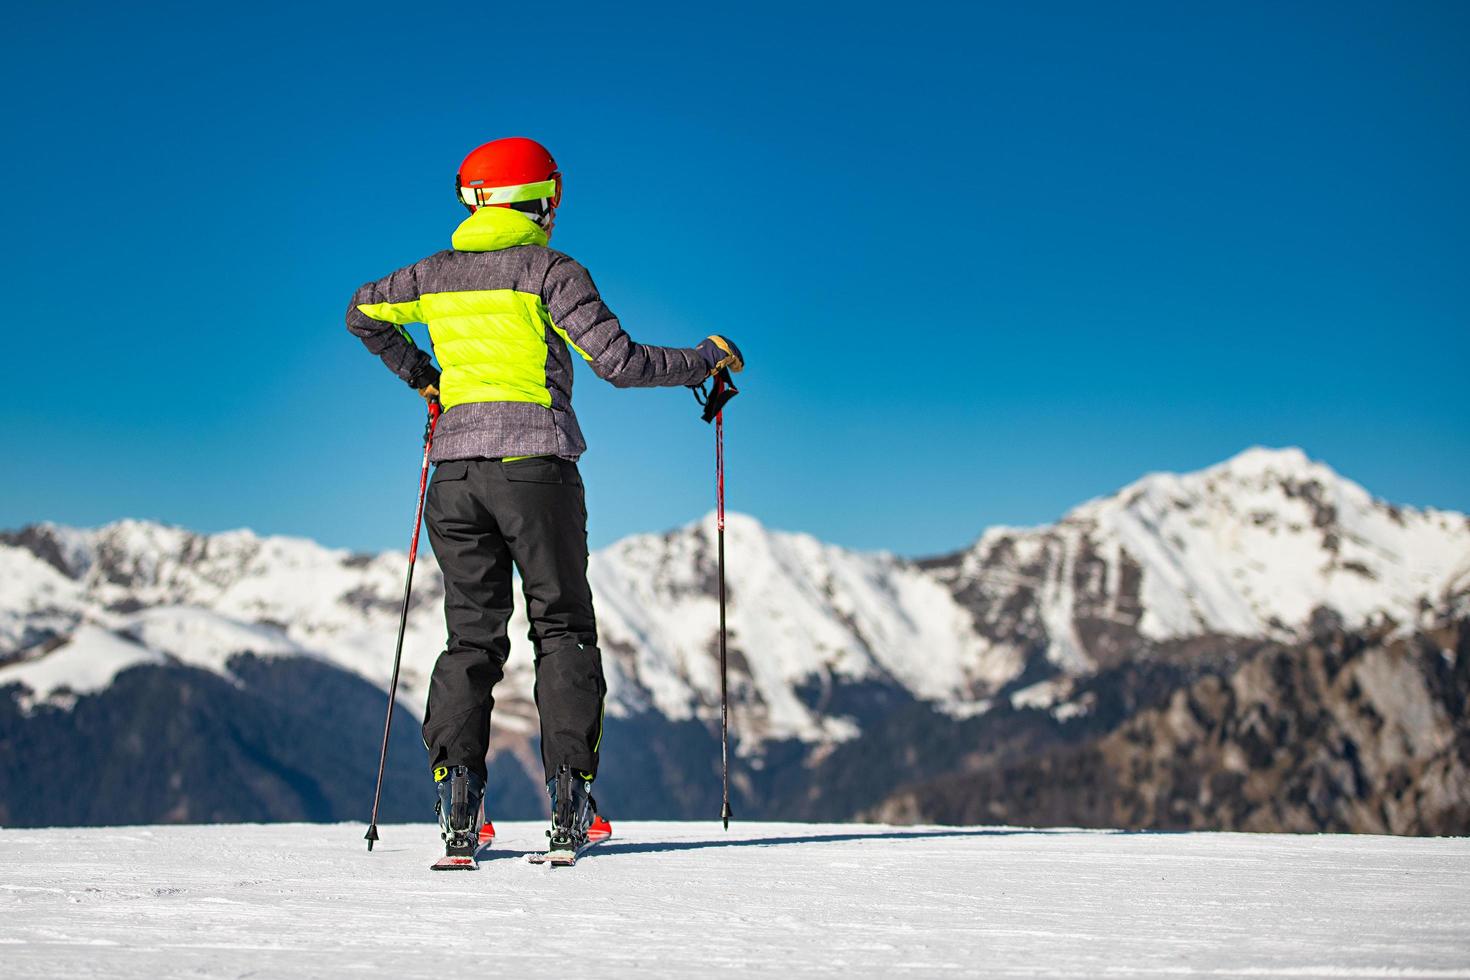 op de skipistes van een skigebied kijkt een skiër naar de bergen voordat hij gaat skiën foto